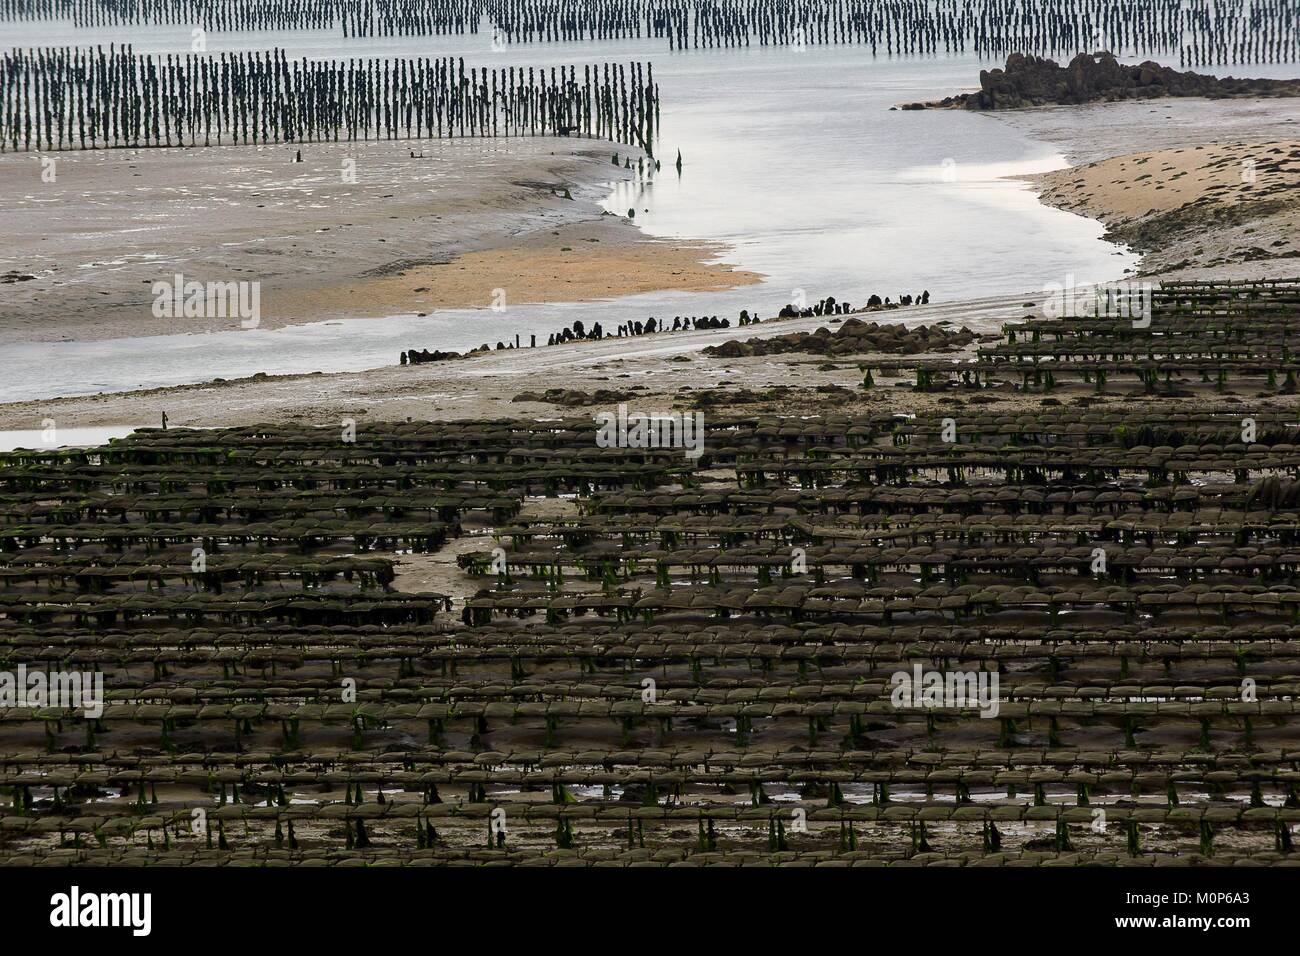 France,Cotes d'Armor,Saint Jacut de la Mer,general view of oyster farms at low tide Stock Photo